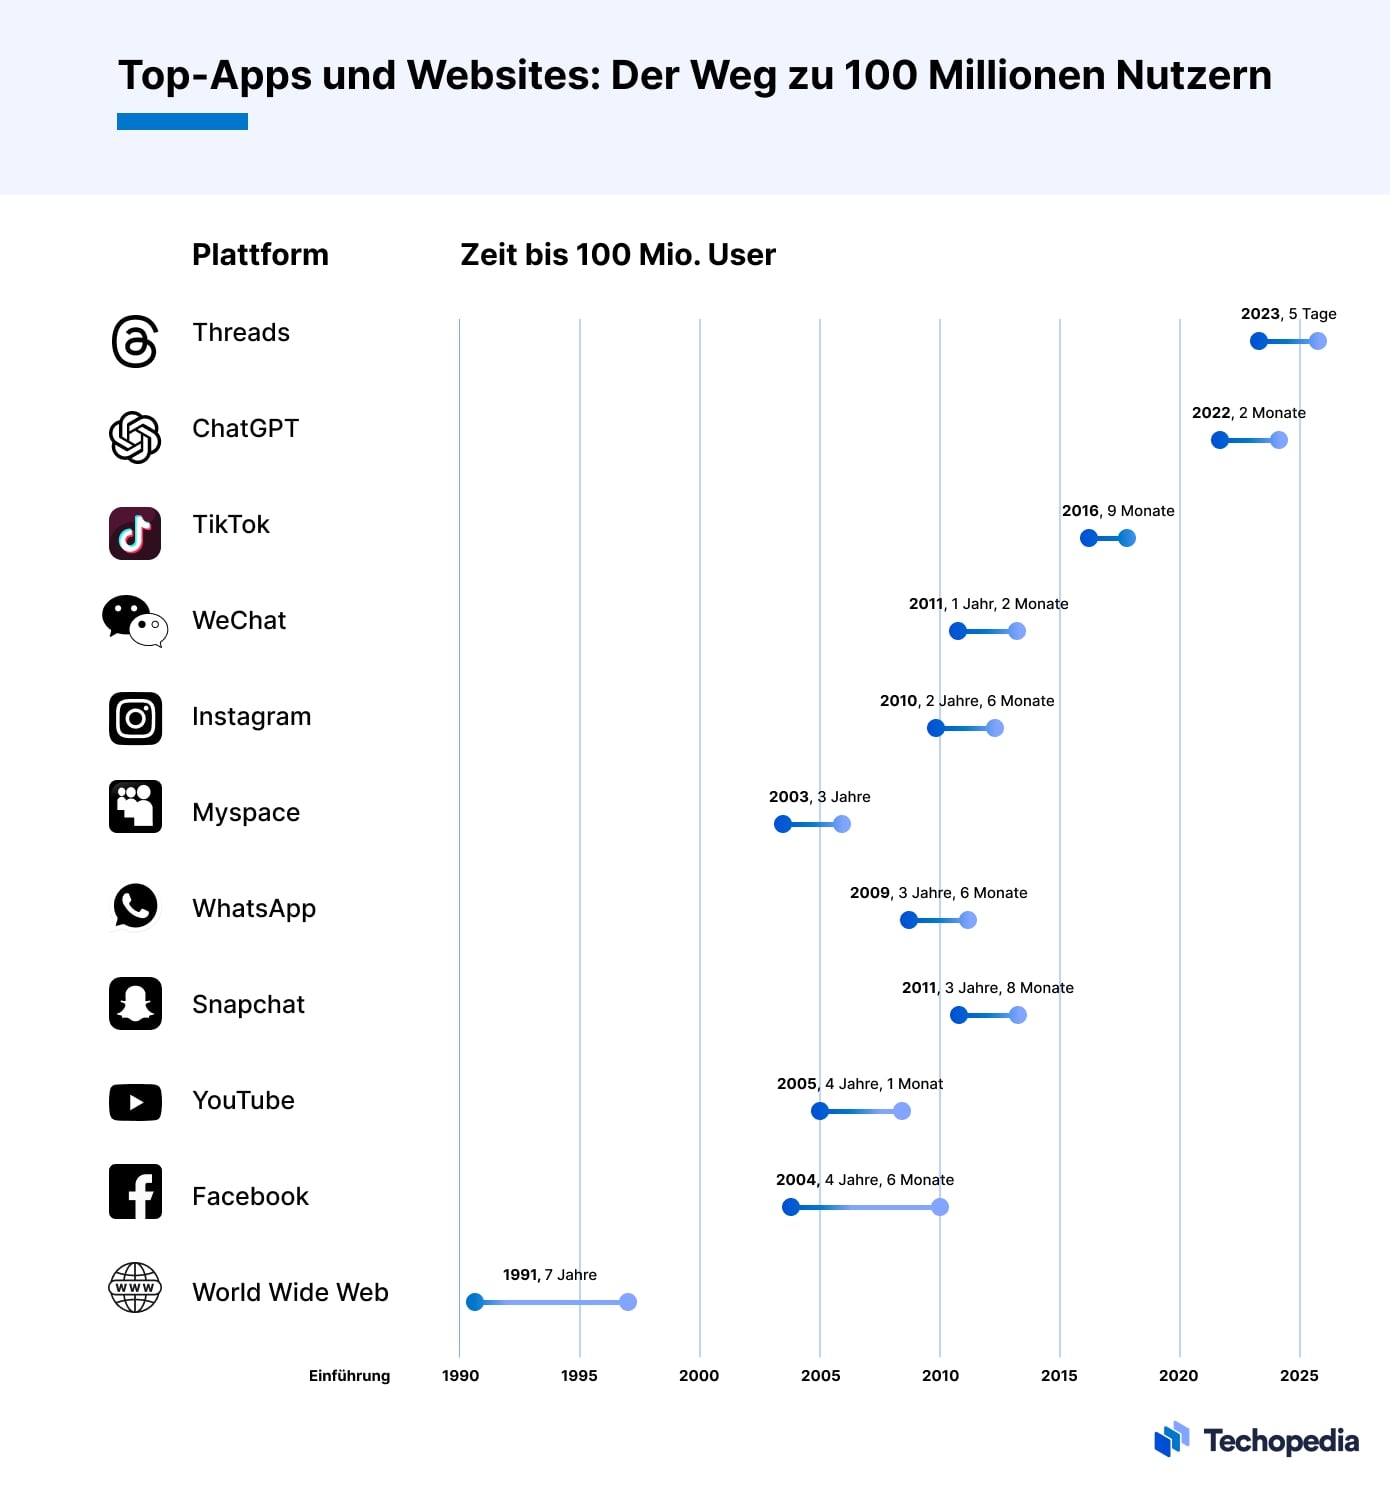 Wie schnell haben die größten Apps und Websites 100 Mio. User erreicht